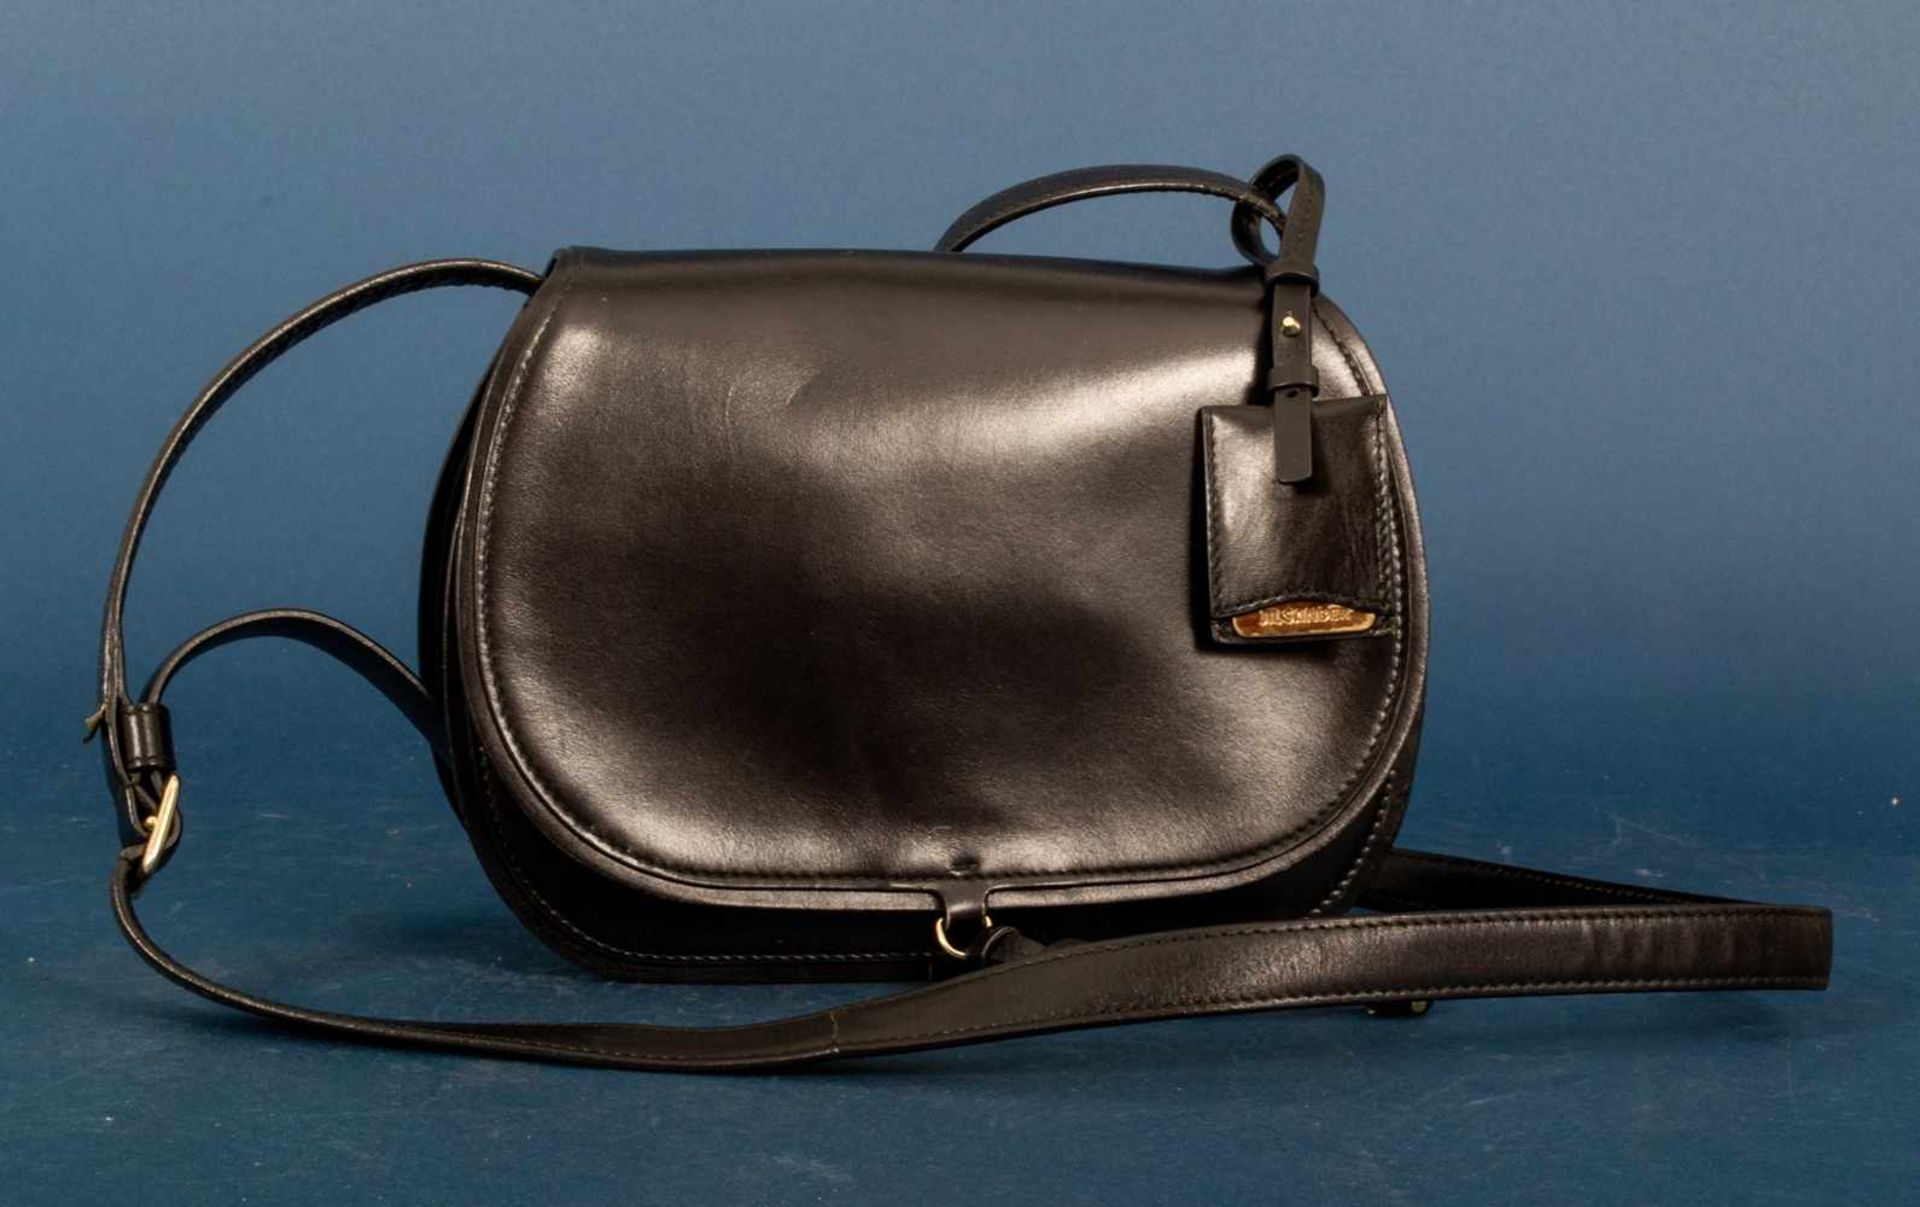 JIL SANDER - Damenhandtasche/Umhängetasche, schwarzes Leder mit polierten Messing-Beschlägen/